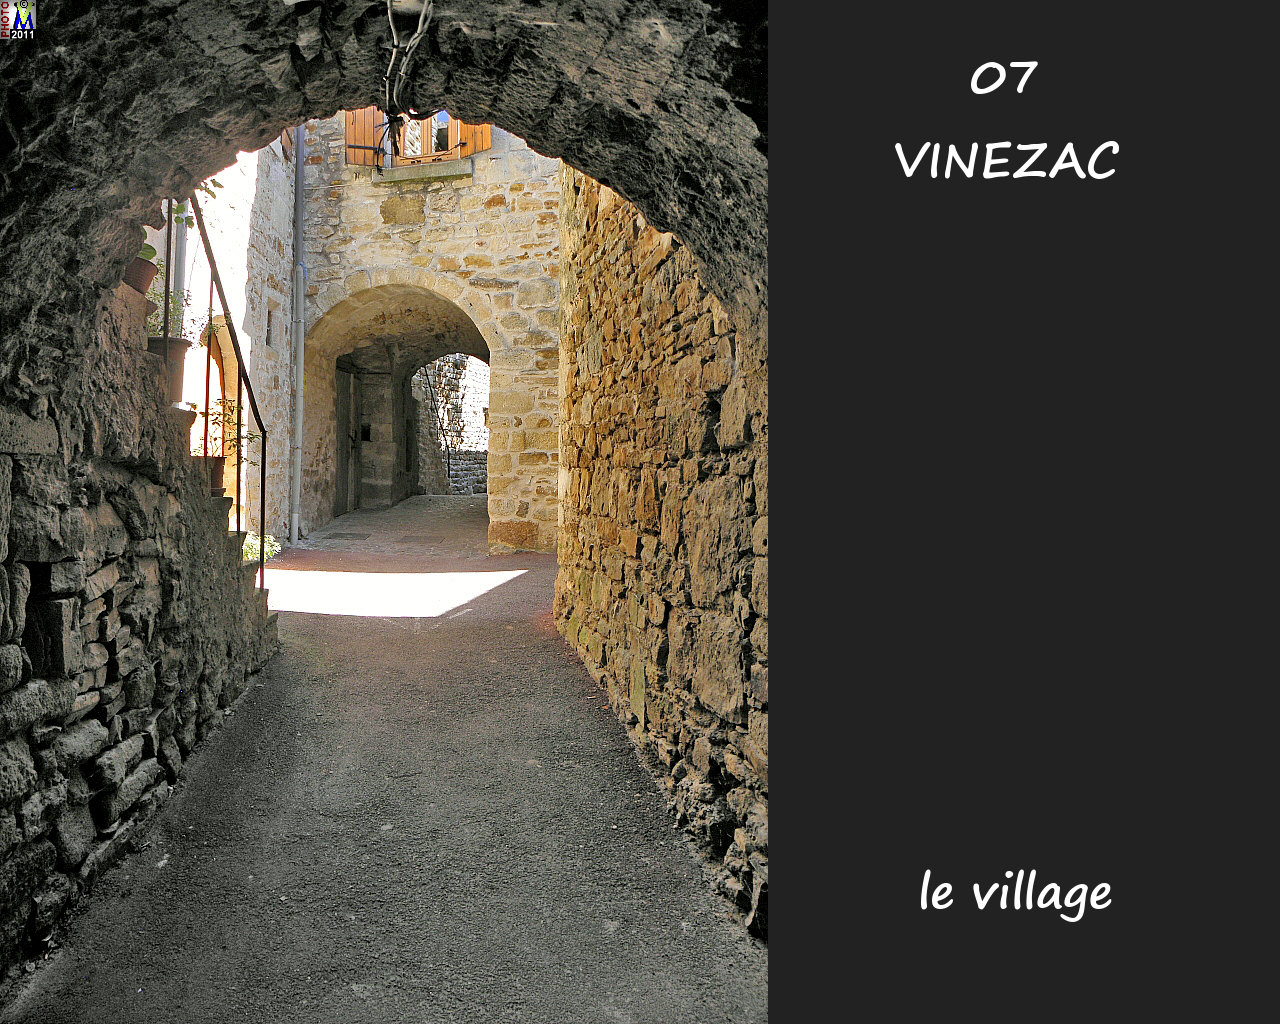 07VINEZAC_village_176.jpg